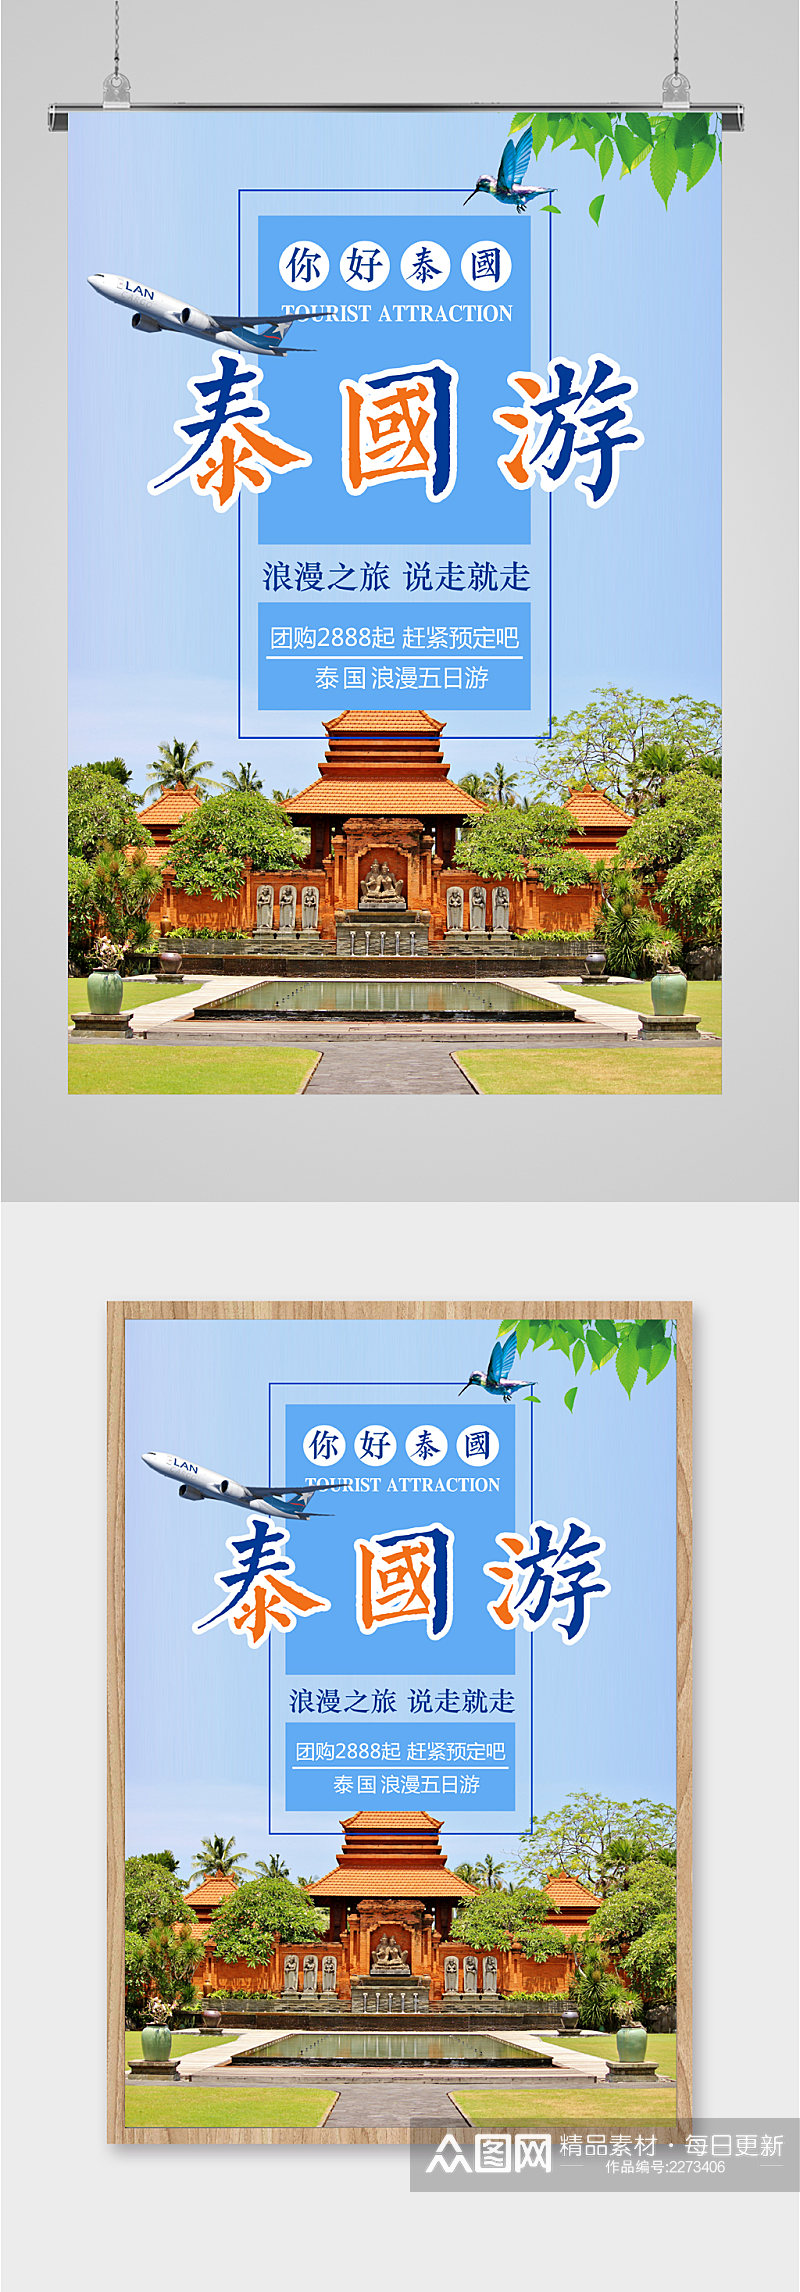 泰国游出国旅行海报素材